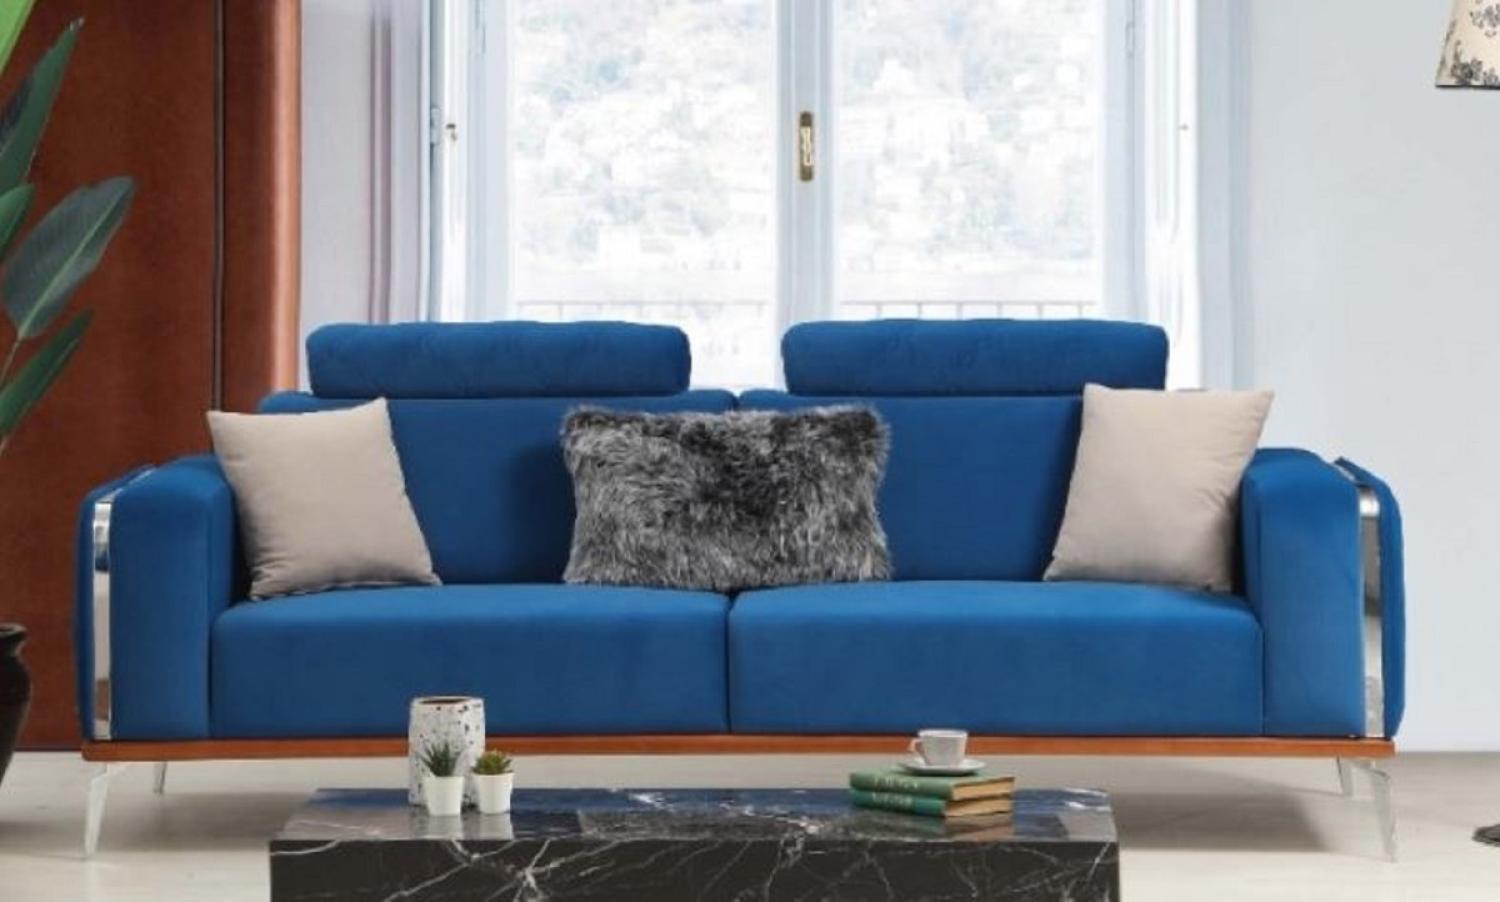 Casa Padrino Luxus Wohnzimmer Sofa mit verstellbarer Rückenlehne Blau / Braun / Silber 225 x 95 x H. 89 cm - Luxus Wohnzimmer Möbel Bild 1